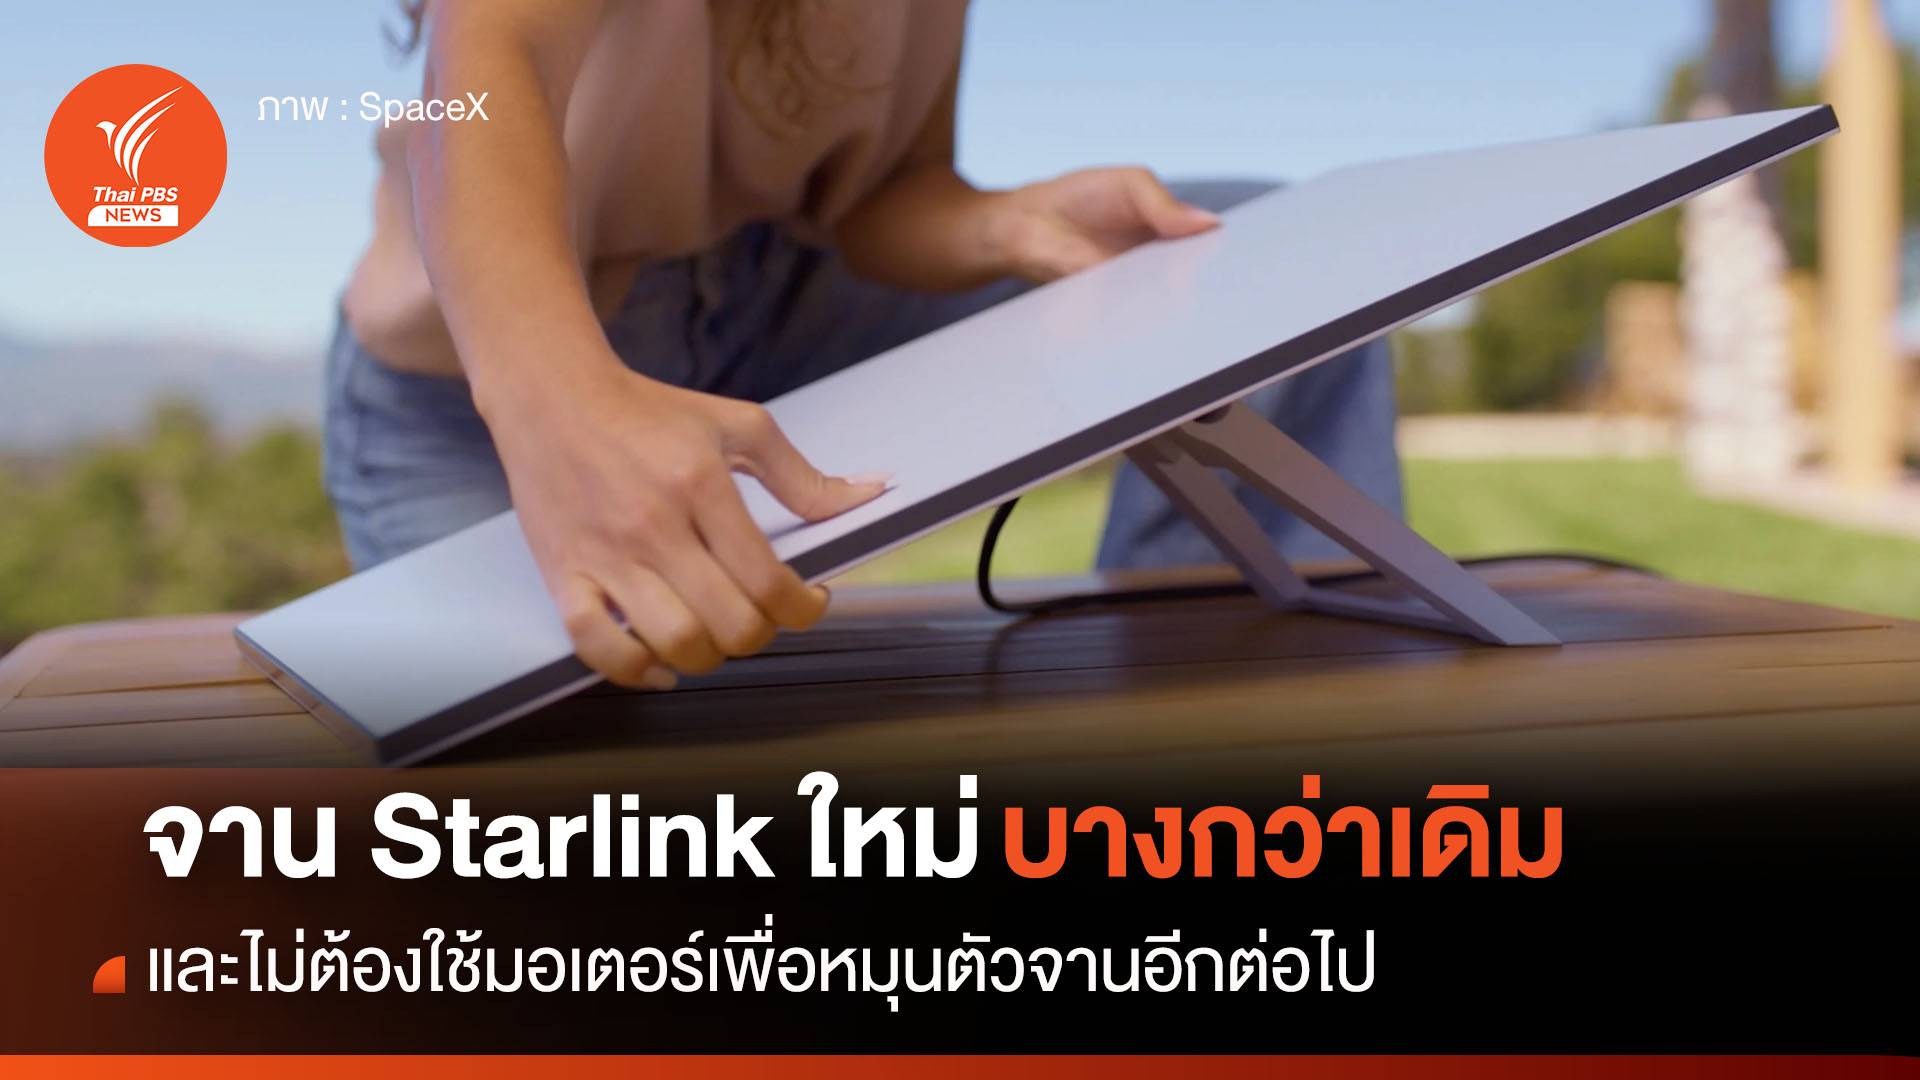 จาน Starlink รุ่นใหม่ บางกว่าเดิมและไม่ต้องใช้มอเตอร์